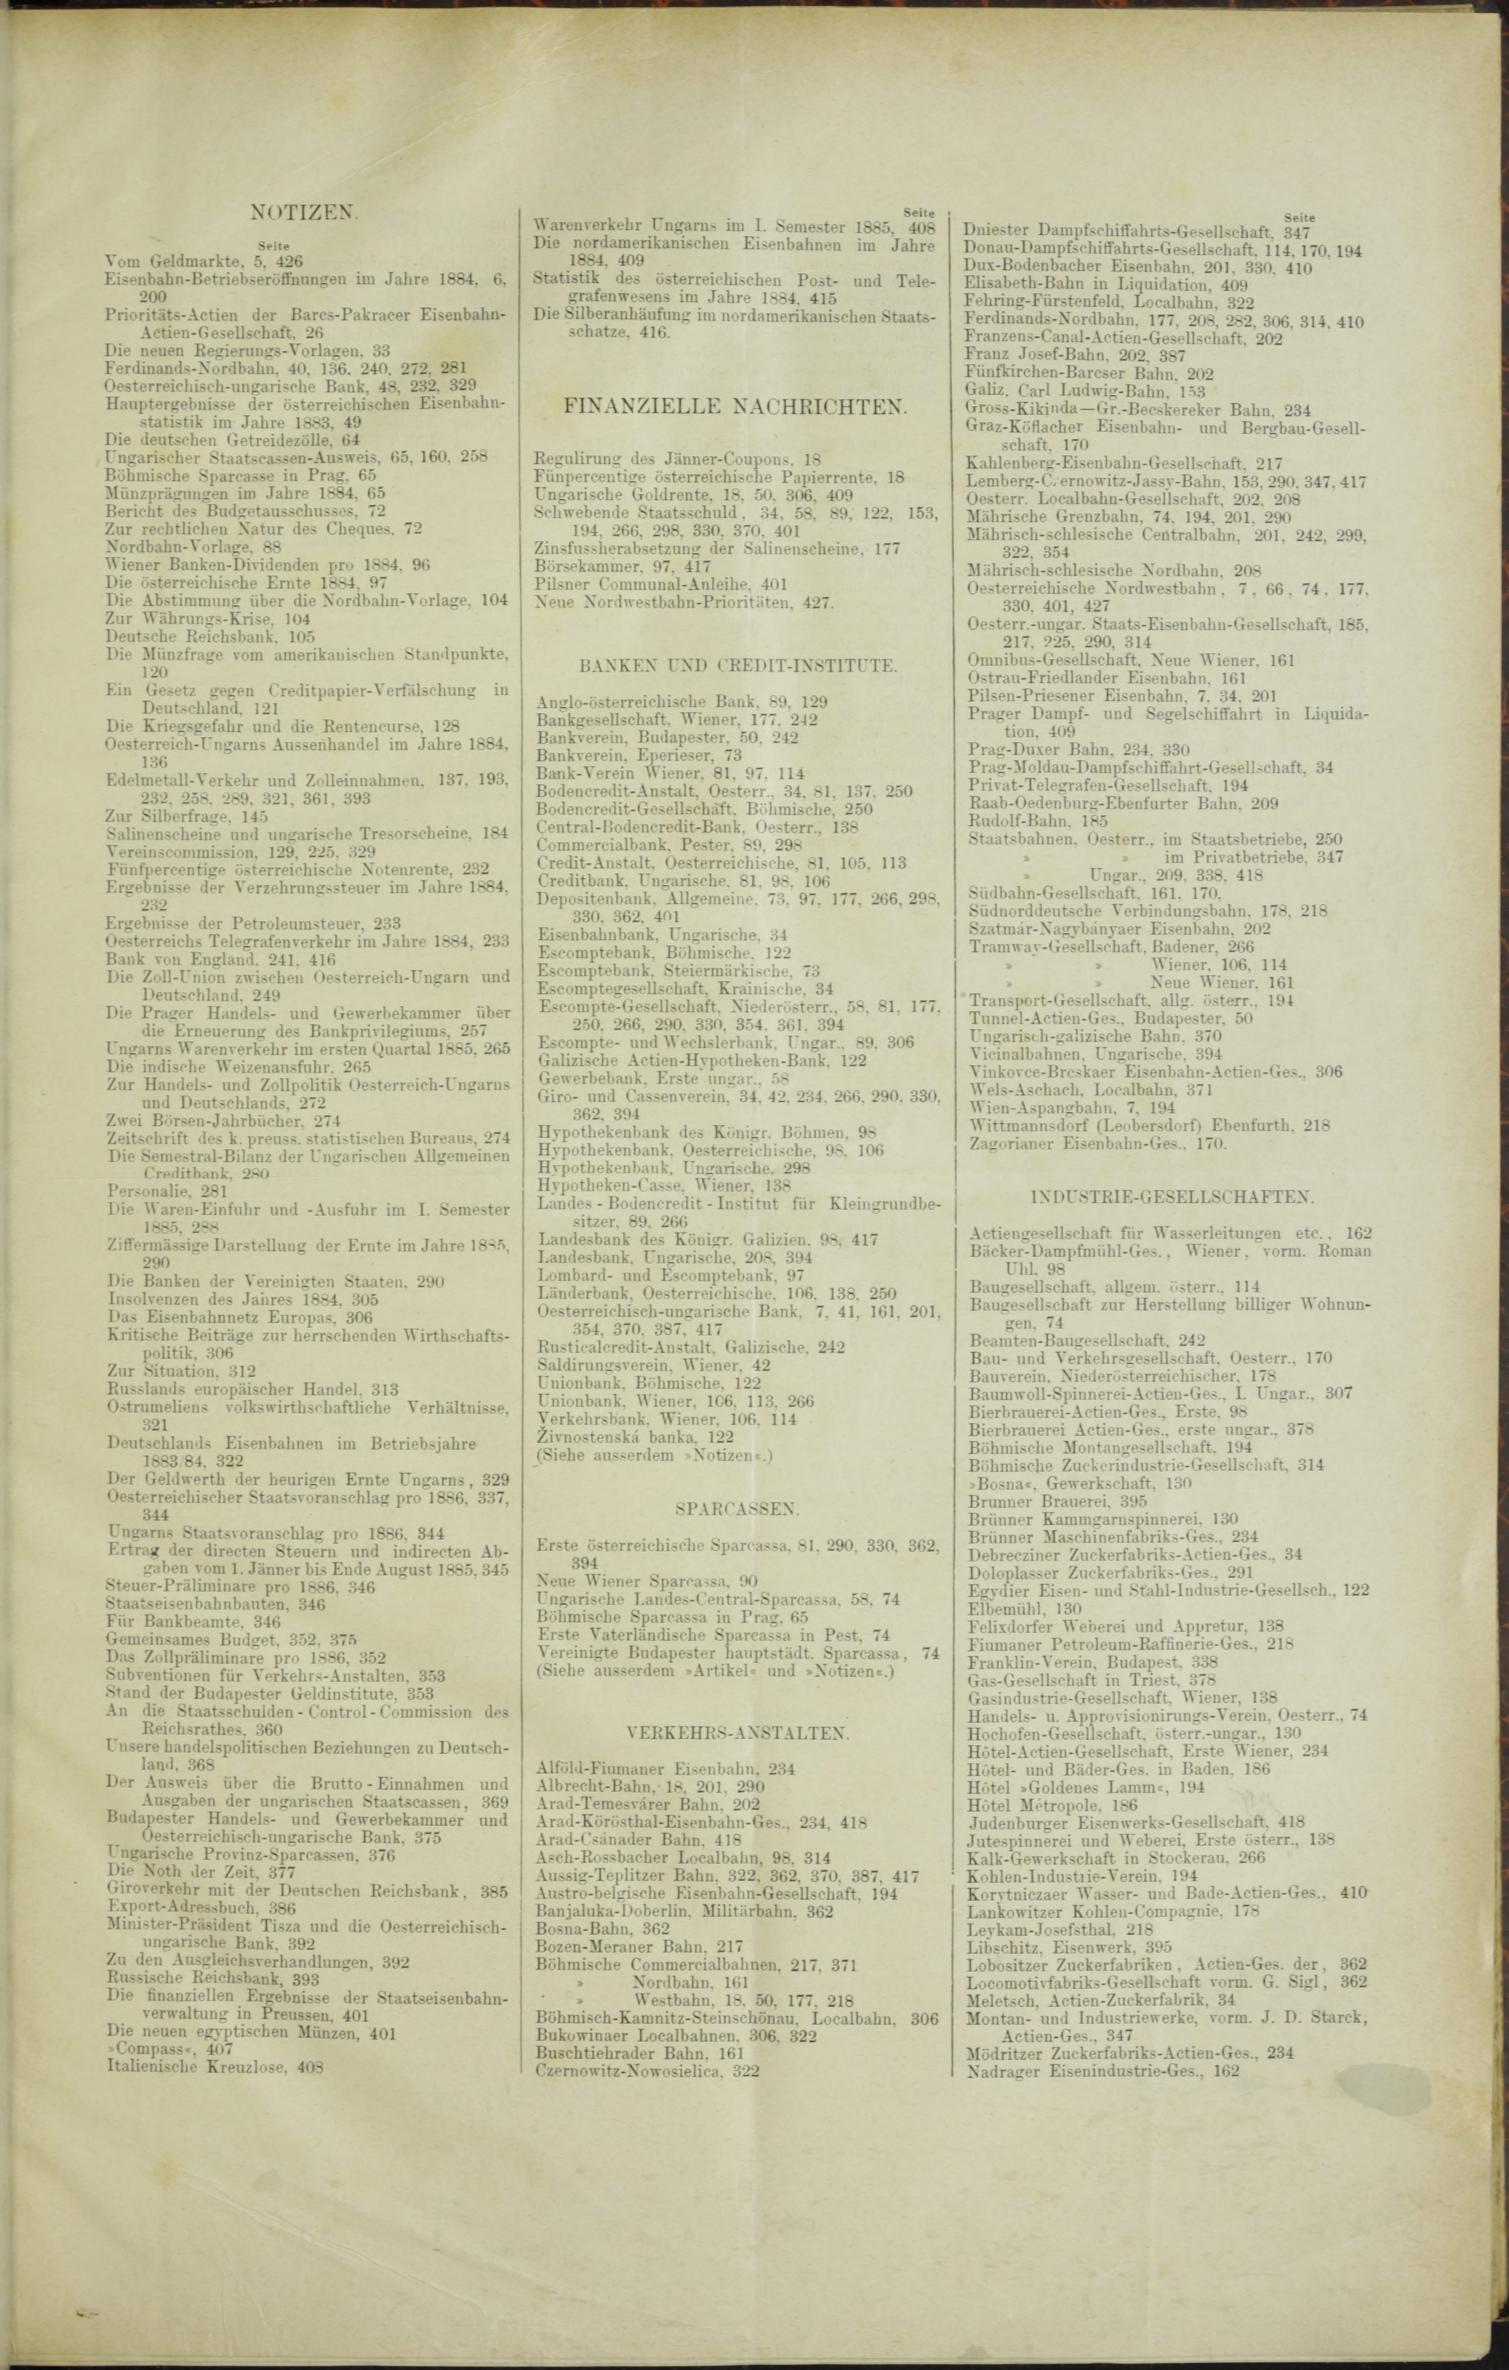 Der Tresor 30.07.1885 - Seite 11